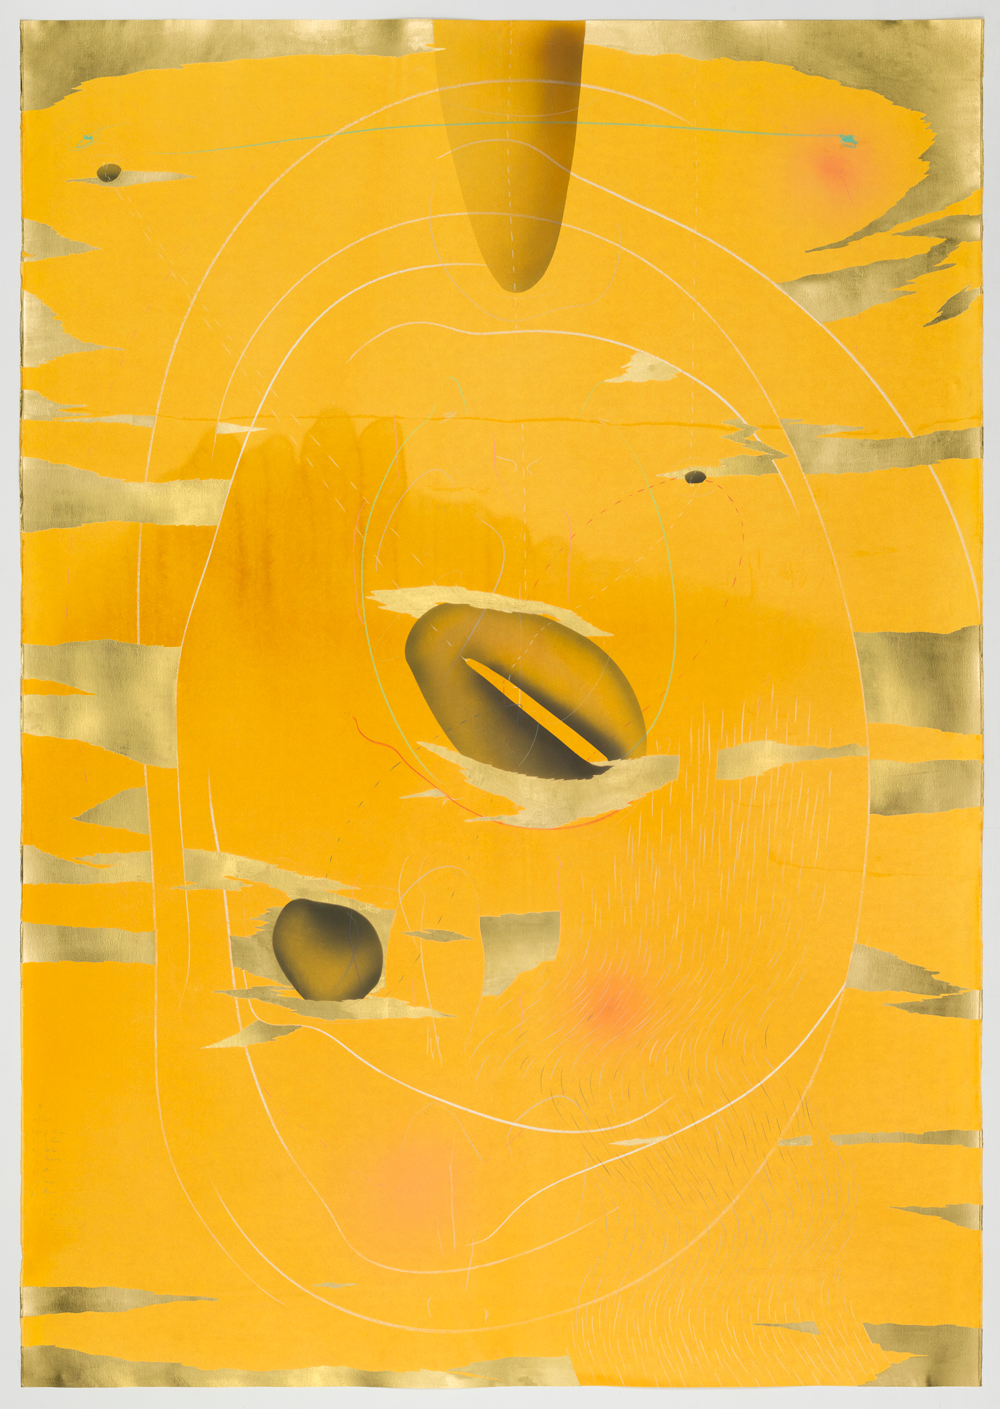 2 of Triptych WV 2018-171 Immersive Integral Radiance Triptychon II Jorinde Voigt Berlin 2018 199 x 140 cm Tusche, flüssige Wasserfarbe, Blattgold, Pastell, Ölkreide, Graphit auf Papier Unikat Signiert